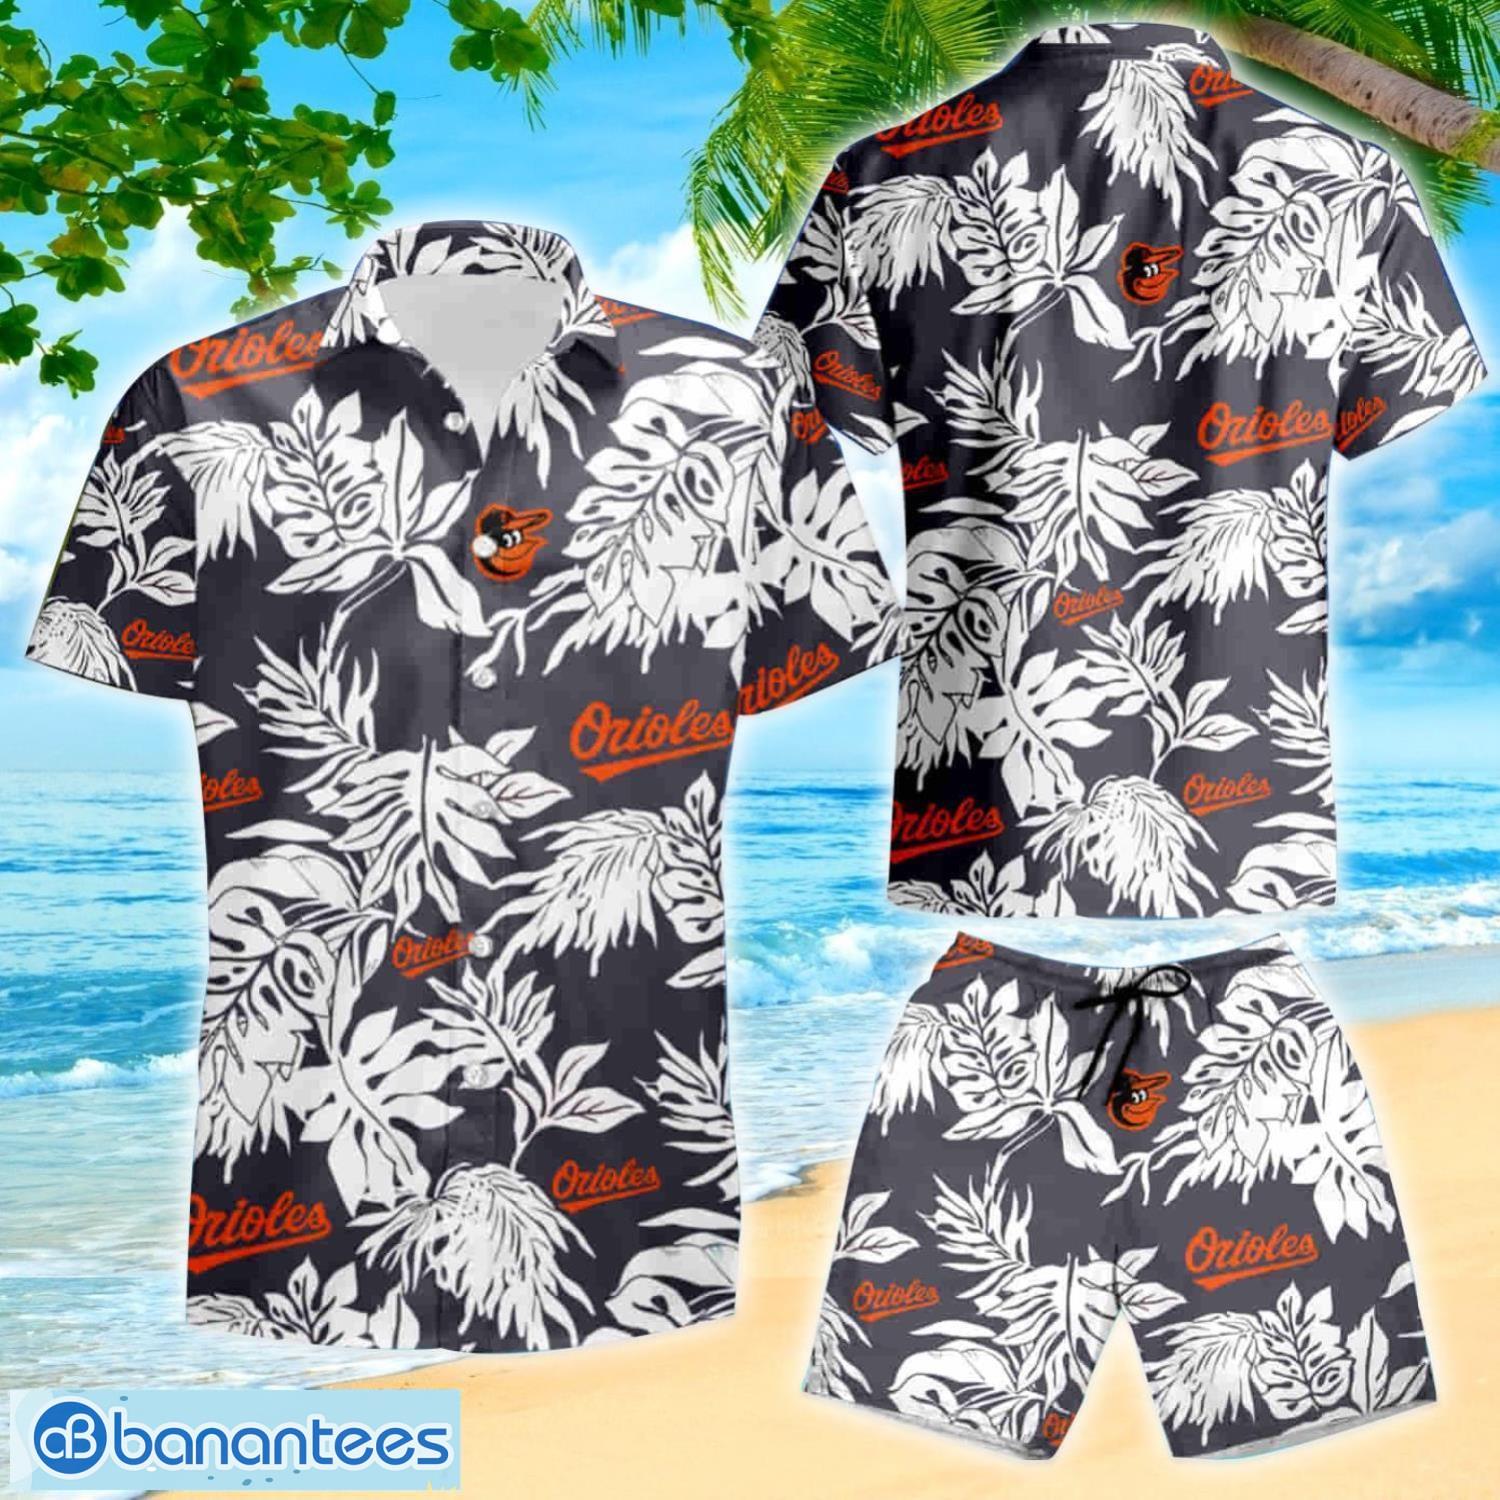 Baltimore Orioles MLB Hot Sports Summer Print Hawaiian Shirts For